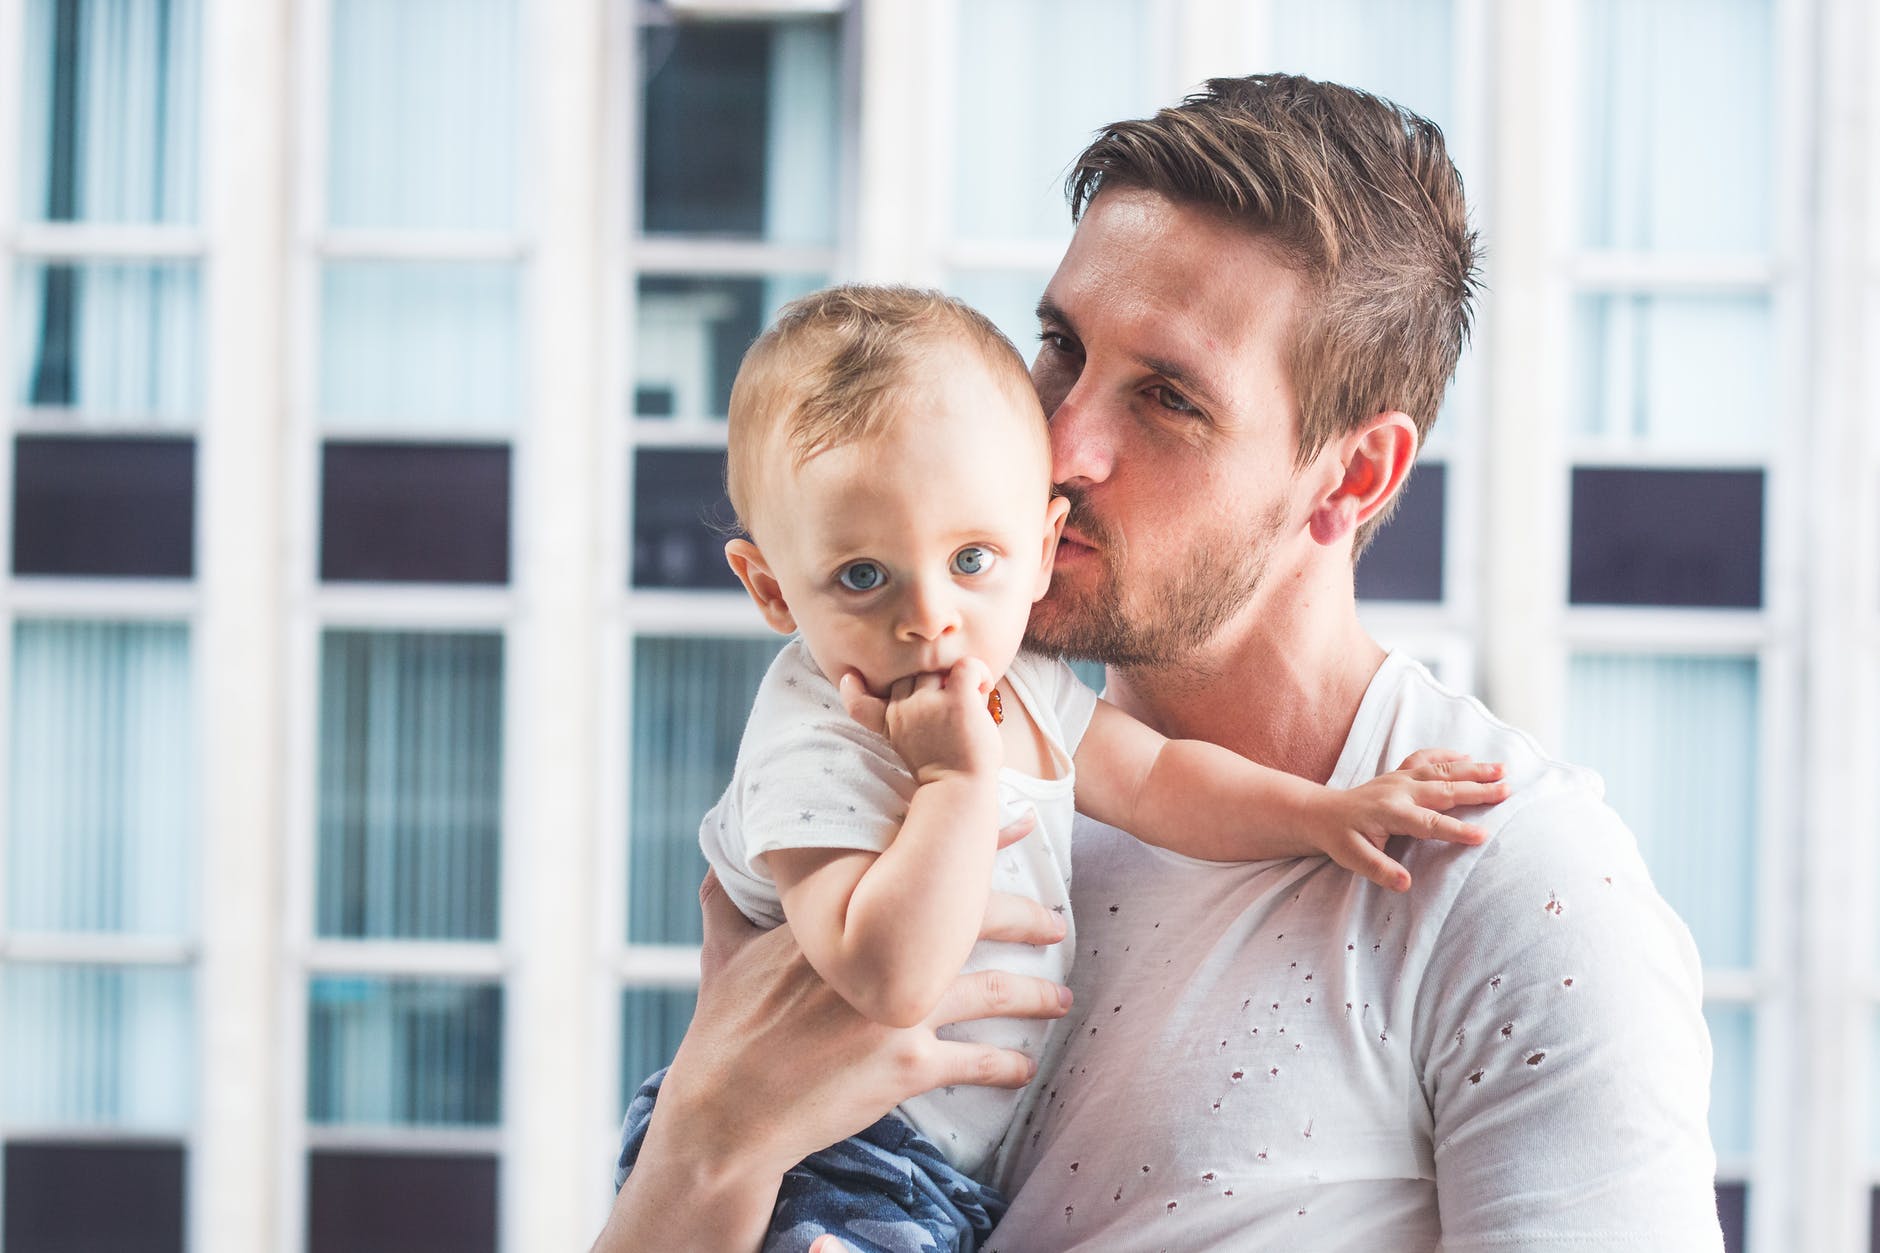 Το viral γράμμα ενός πατέρα: «Ανάλαβε το μερίδιο της ευθύνης σου στο σπίτι»